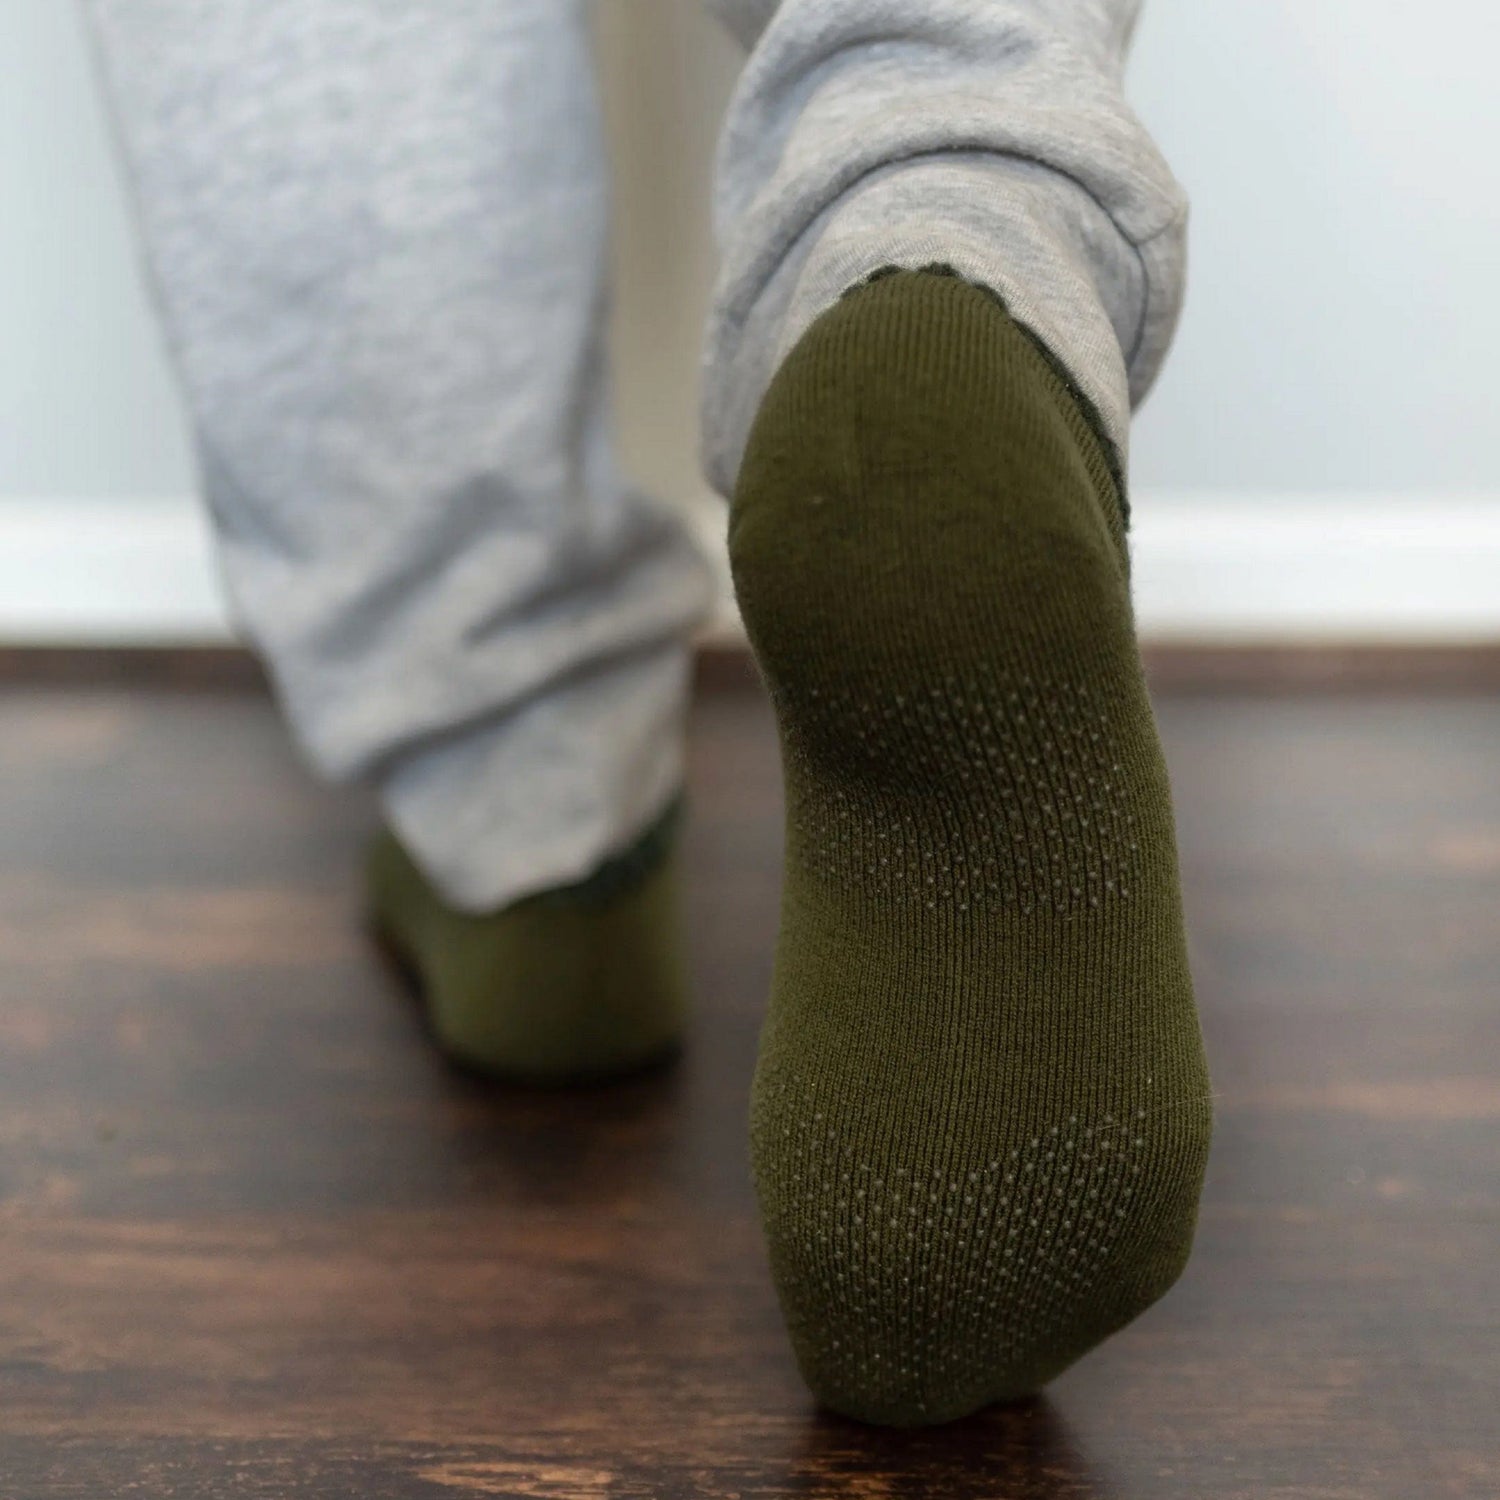 Buy Men's Slipper Socks Super Soft Warm Home Sock with Non-Slip Indoor  Slipper Shoes Socks(Large / 11-12, Green) at